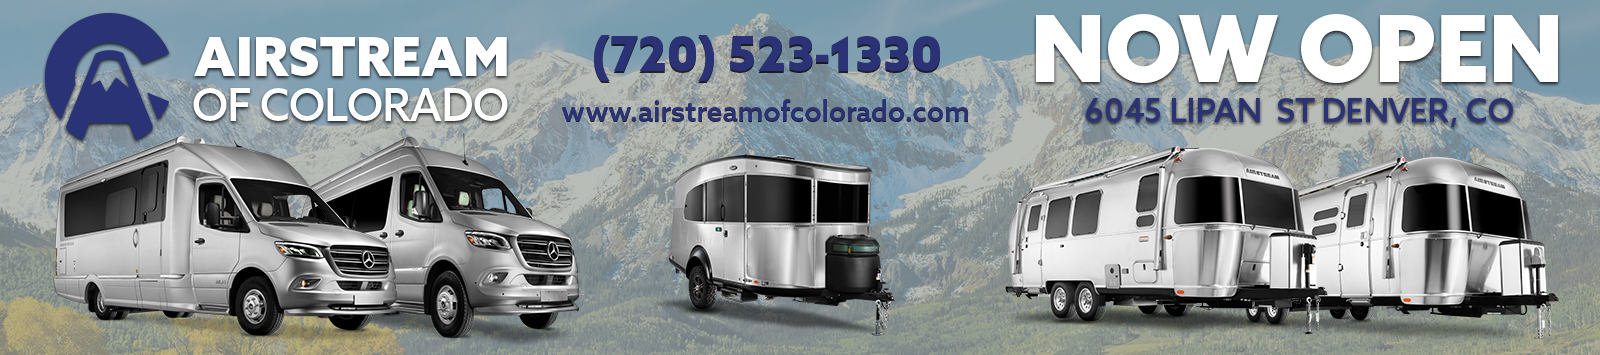 Airstream of Colorado Announcement